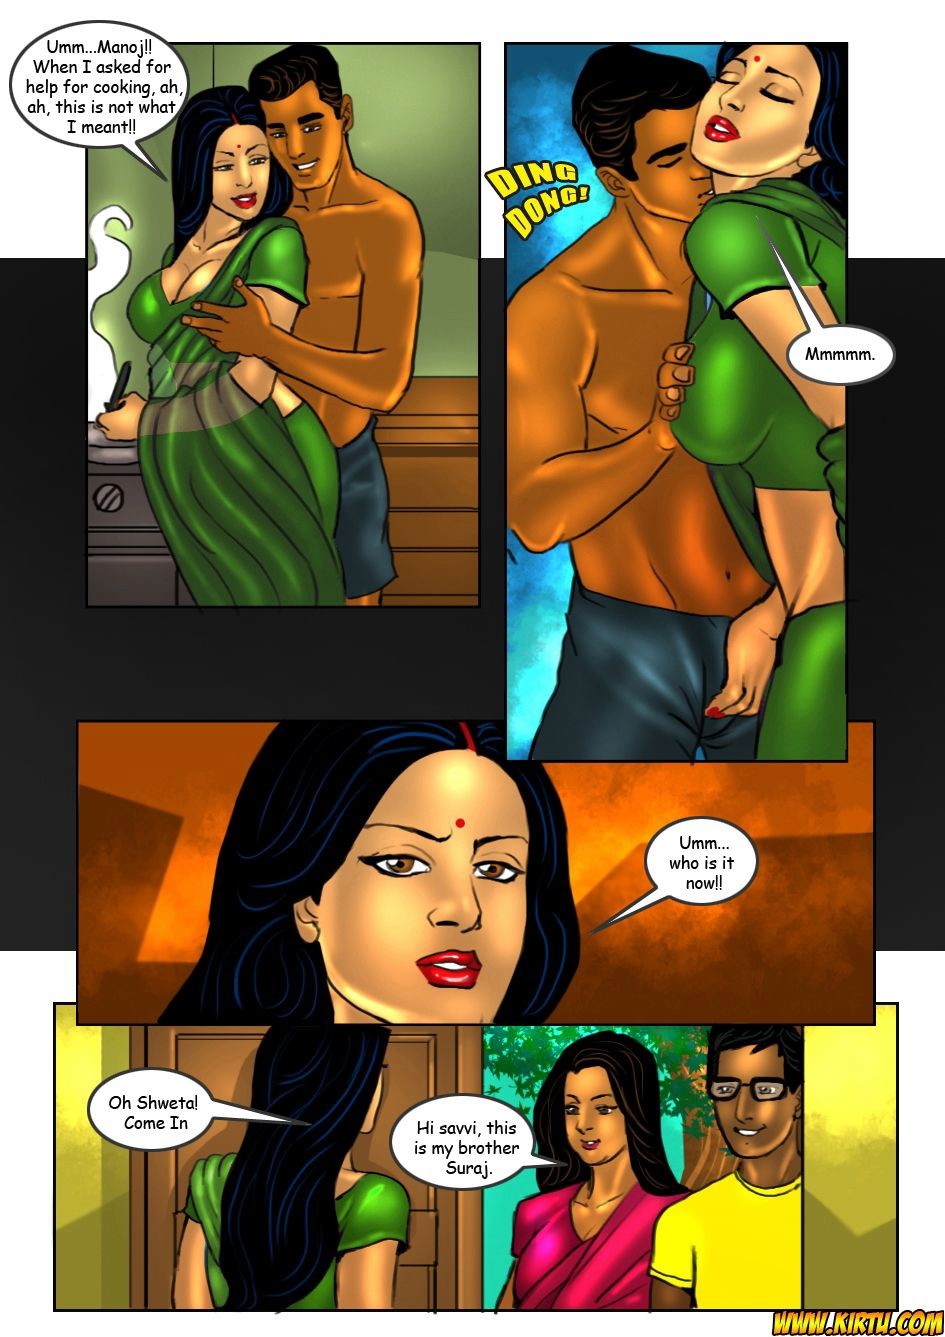 Savita Bhabhi Surj Ki Chudae Kartun - Savita Bhabhi 18- Tuition Teacher - Hot Indian Sex Comics Stories